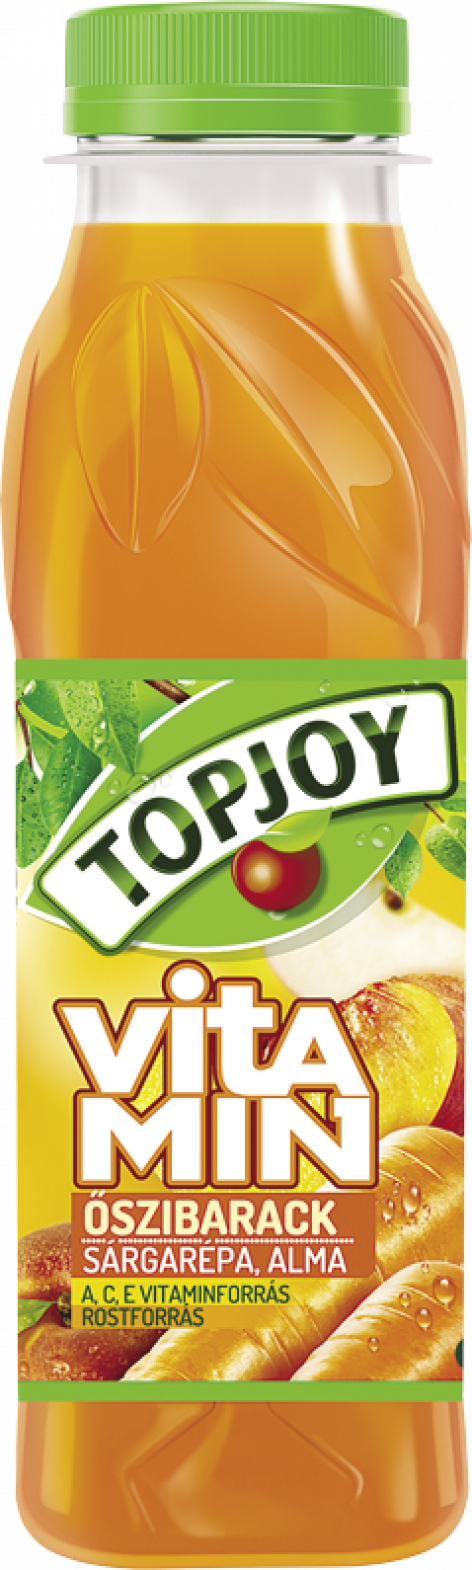 Topjoy Vitamin 0,3 l